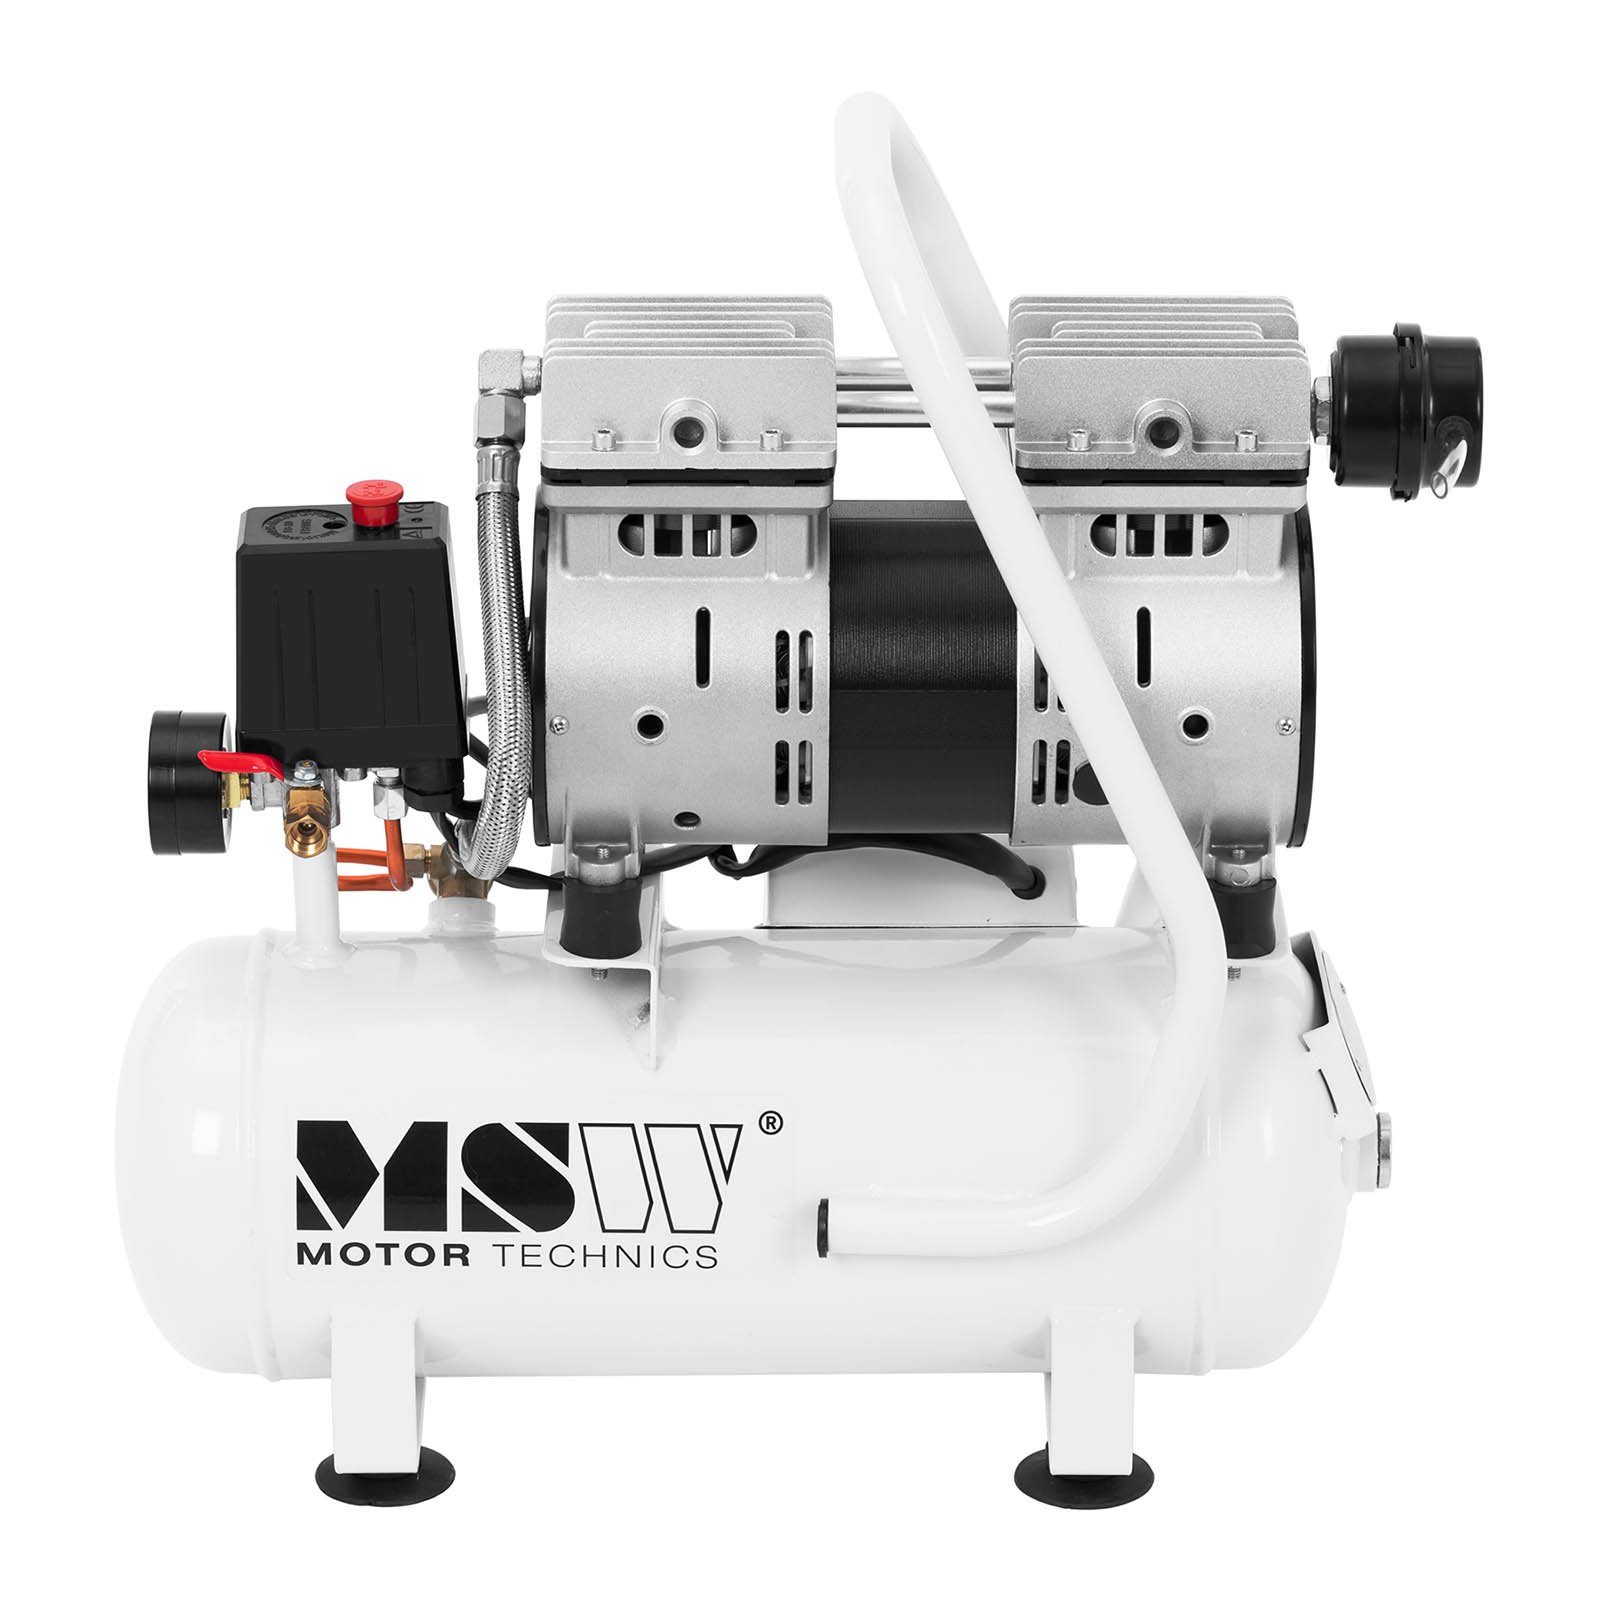 MSW Kompressor Kompressor Druckluft-Kompressor W 550 Luftkompressor L - ölfrei - 9